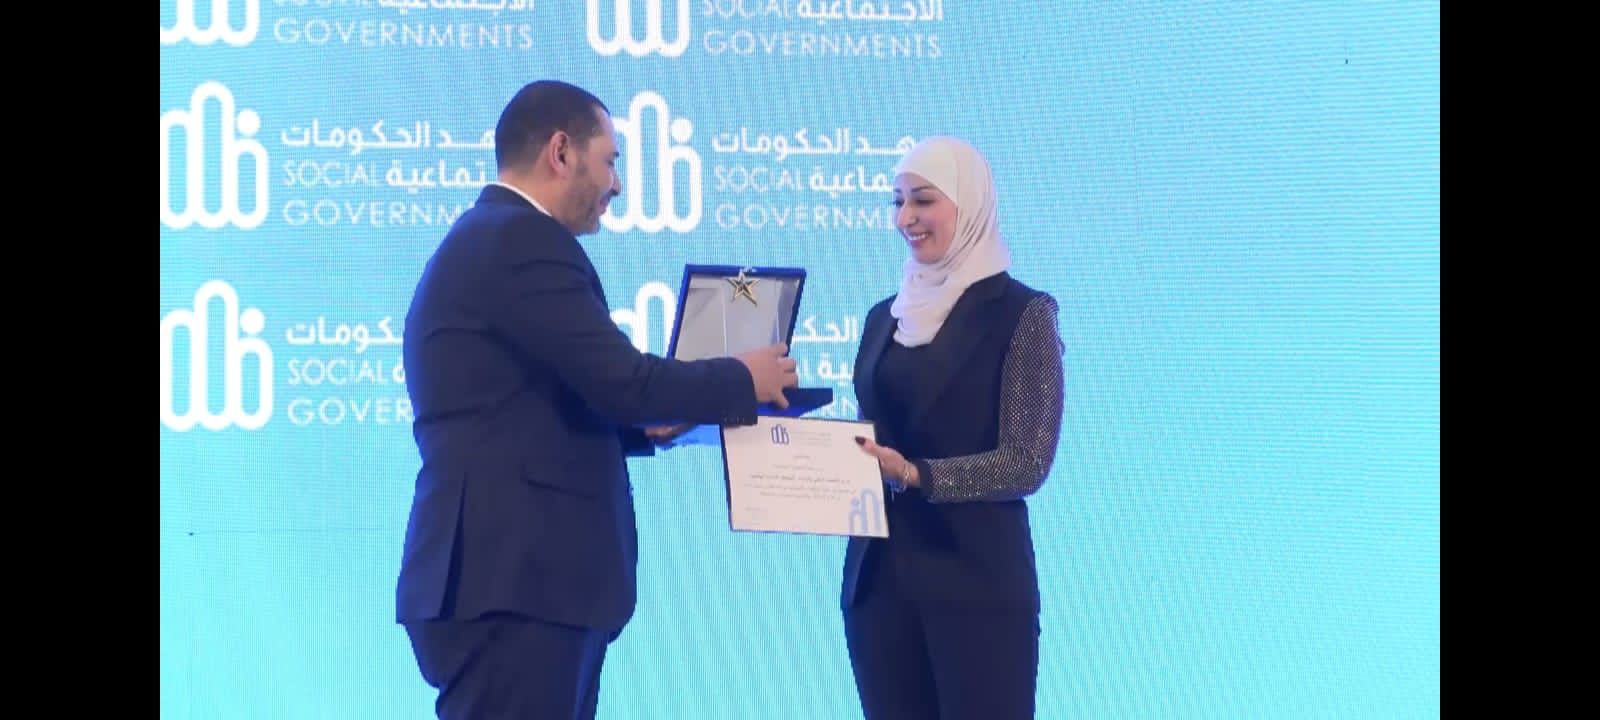 الاقتصاد الرقمي والريادة تفوز بجائزة الحكومات الاجتماعية في القاهرة 